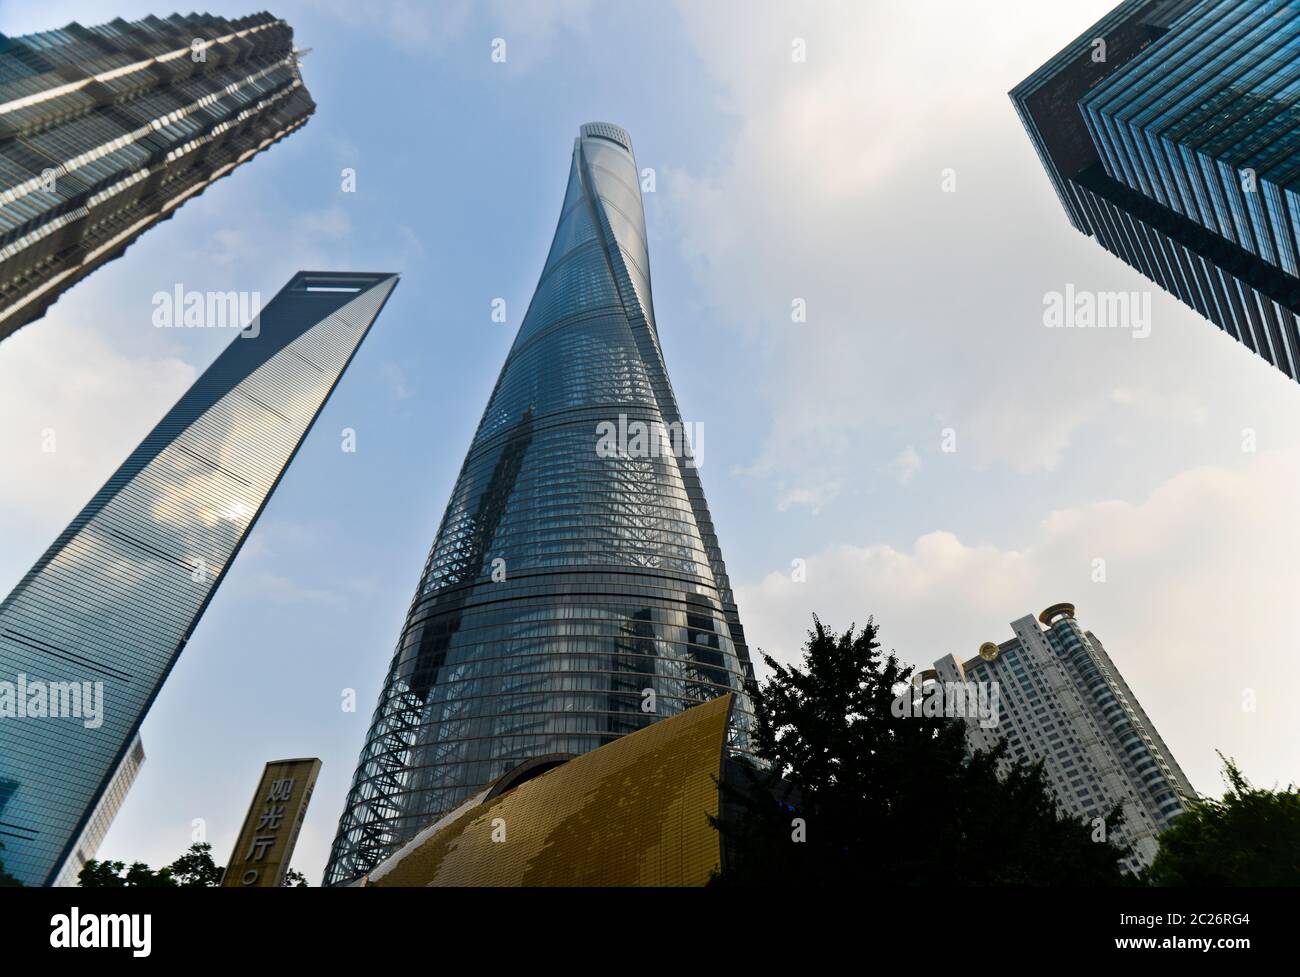 Grattacieli di Shanghai nel distretto di Pudong: La Torre di Shanghai, il Centro finanziario Mondiale di Shanghai, la Torre Jinmao. Cina Foto Stock